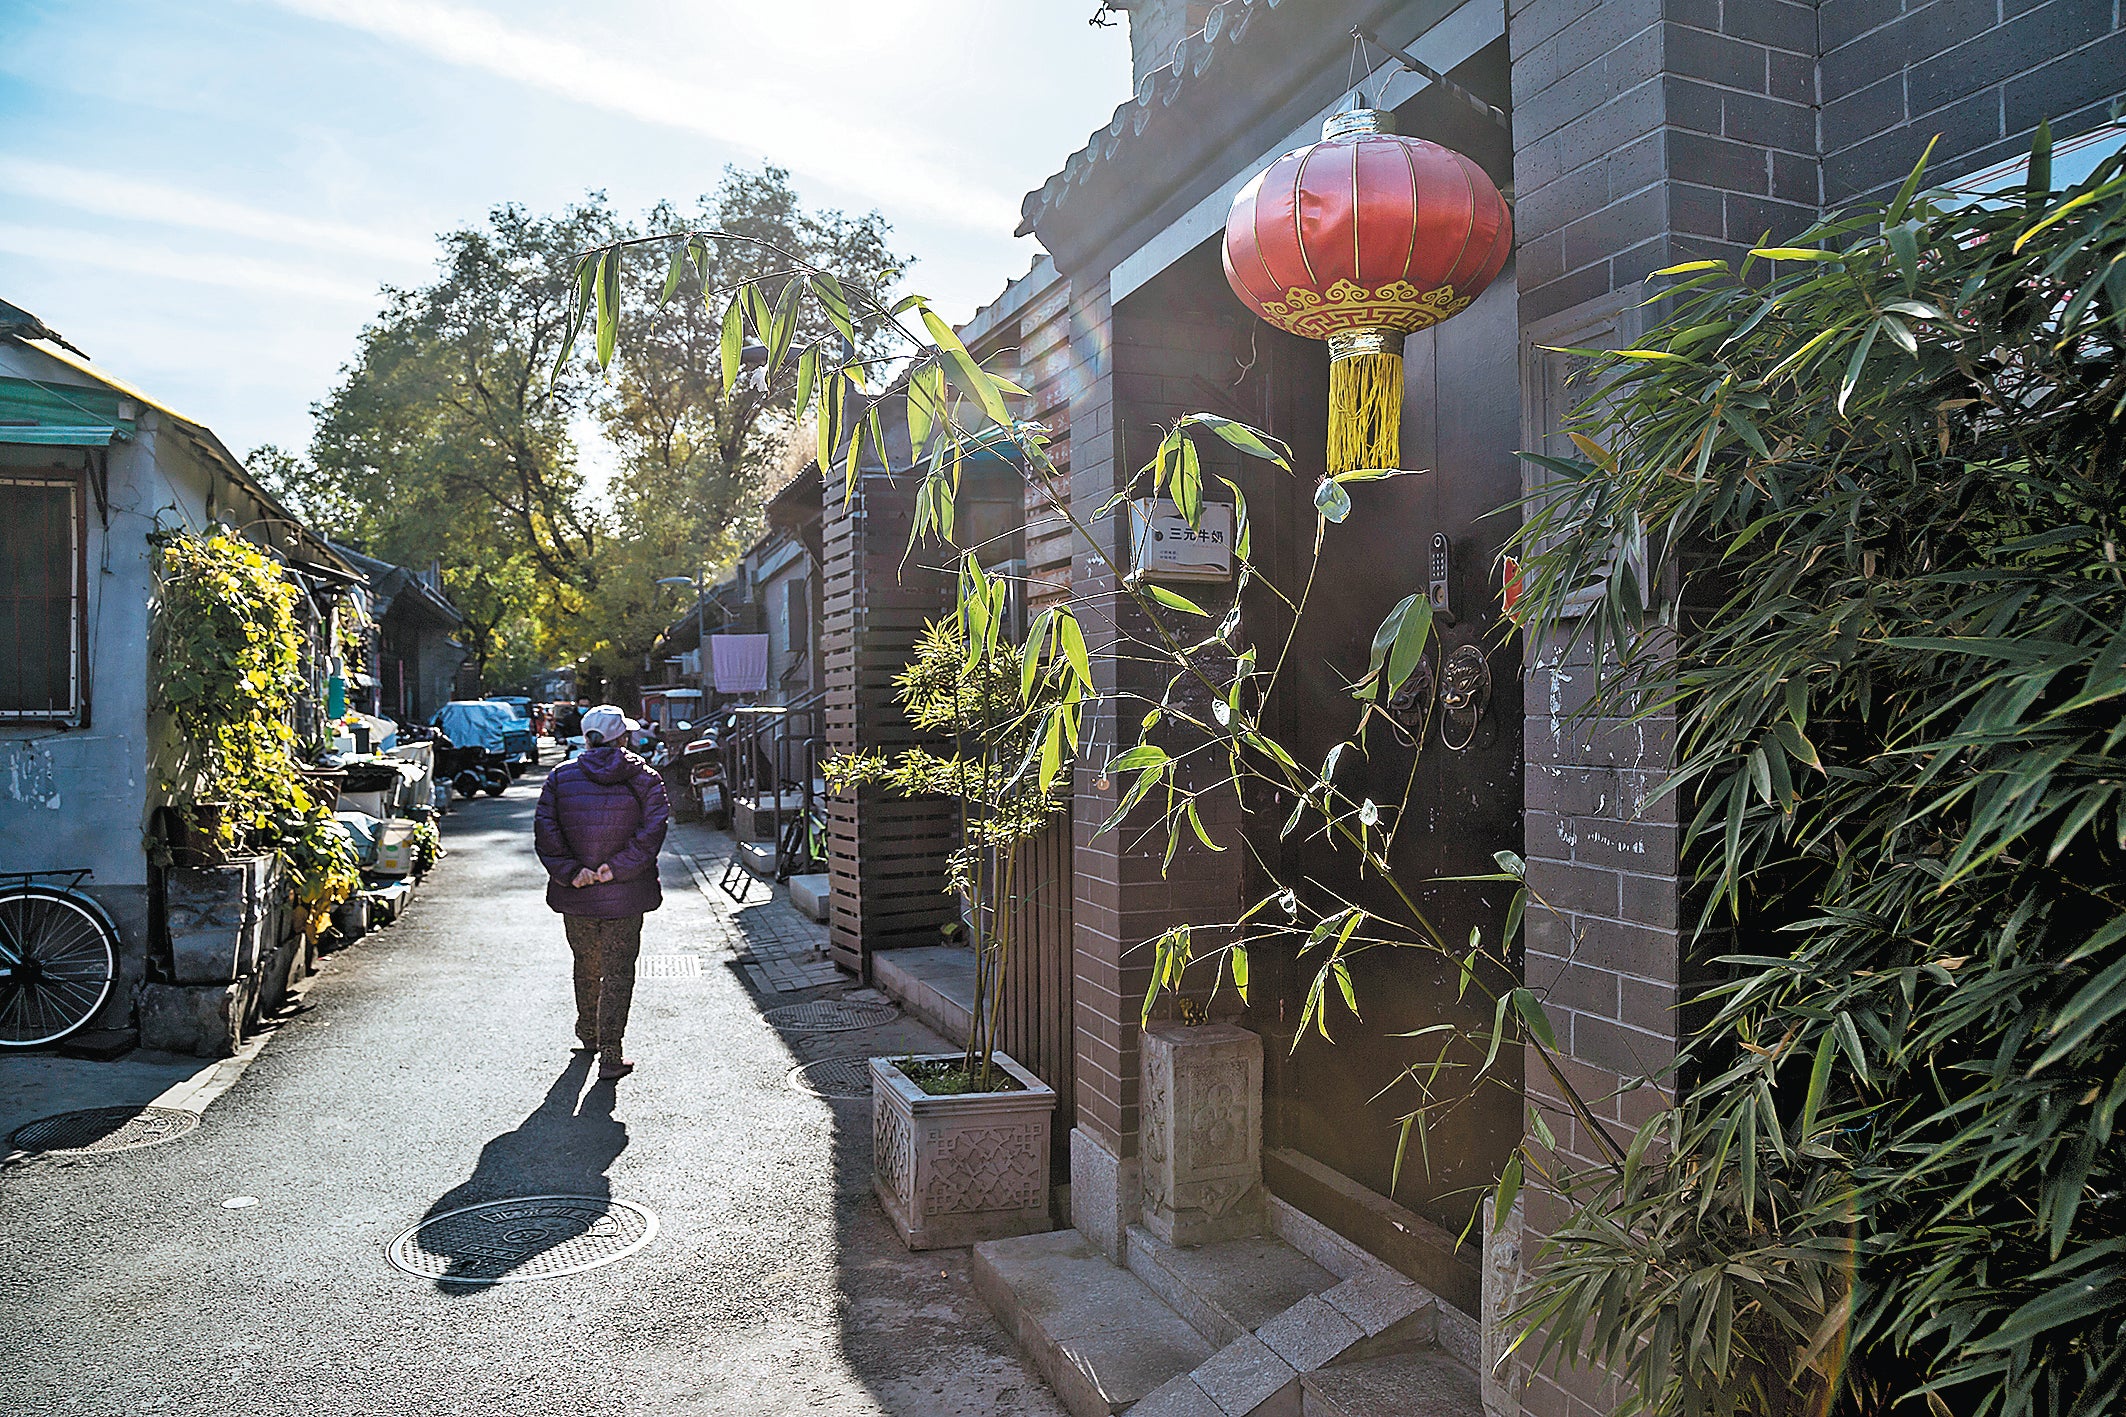 A pedestrian strolls through a hutong in Beijing